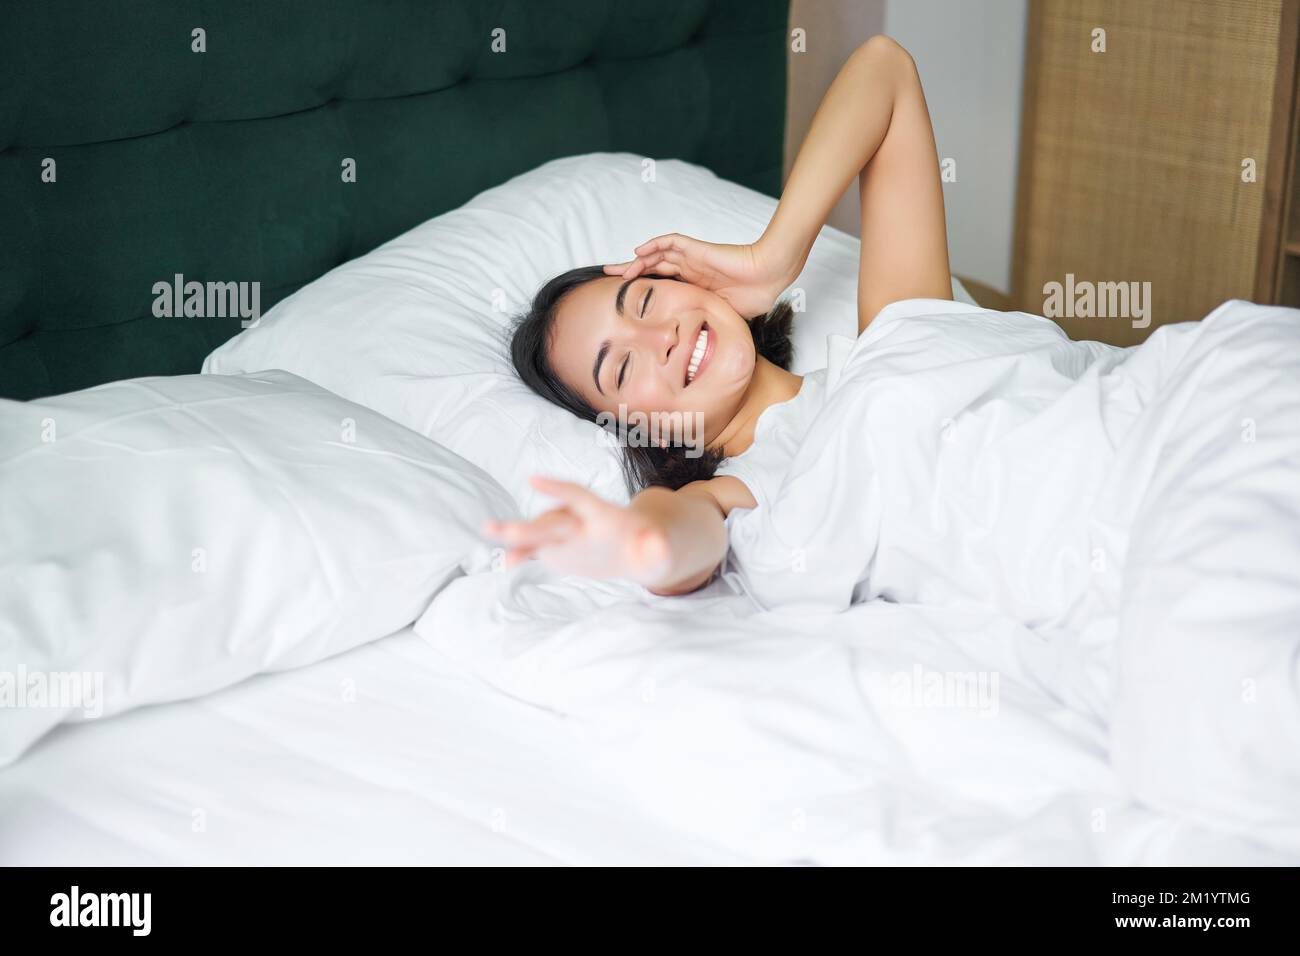 Romantisches asiatisches Mädchen wacht in einem gemütlichen Schlafzimmer  auf, liegt im Bett mit weißen Laken, streckt ihre Hand in Richtung leeres  Kissen Stockfotografie - Alamy